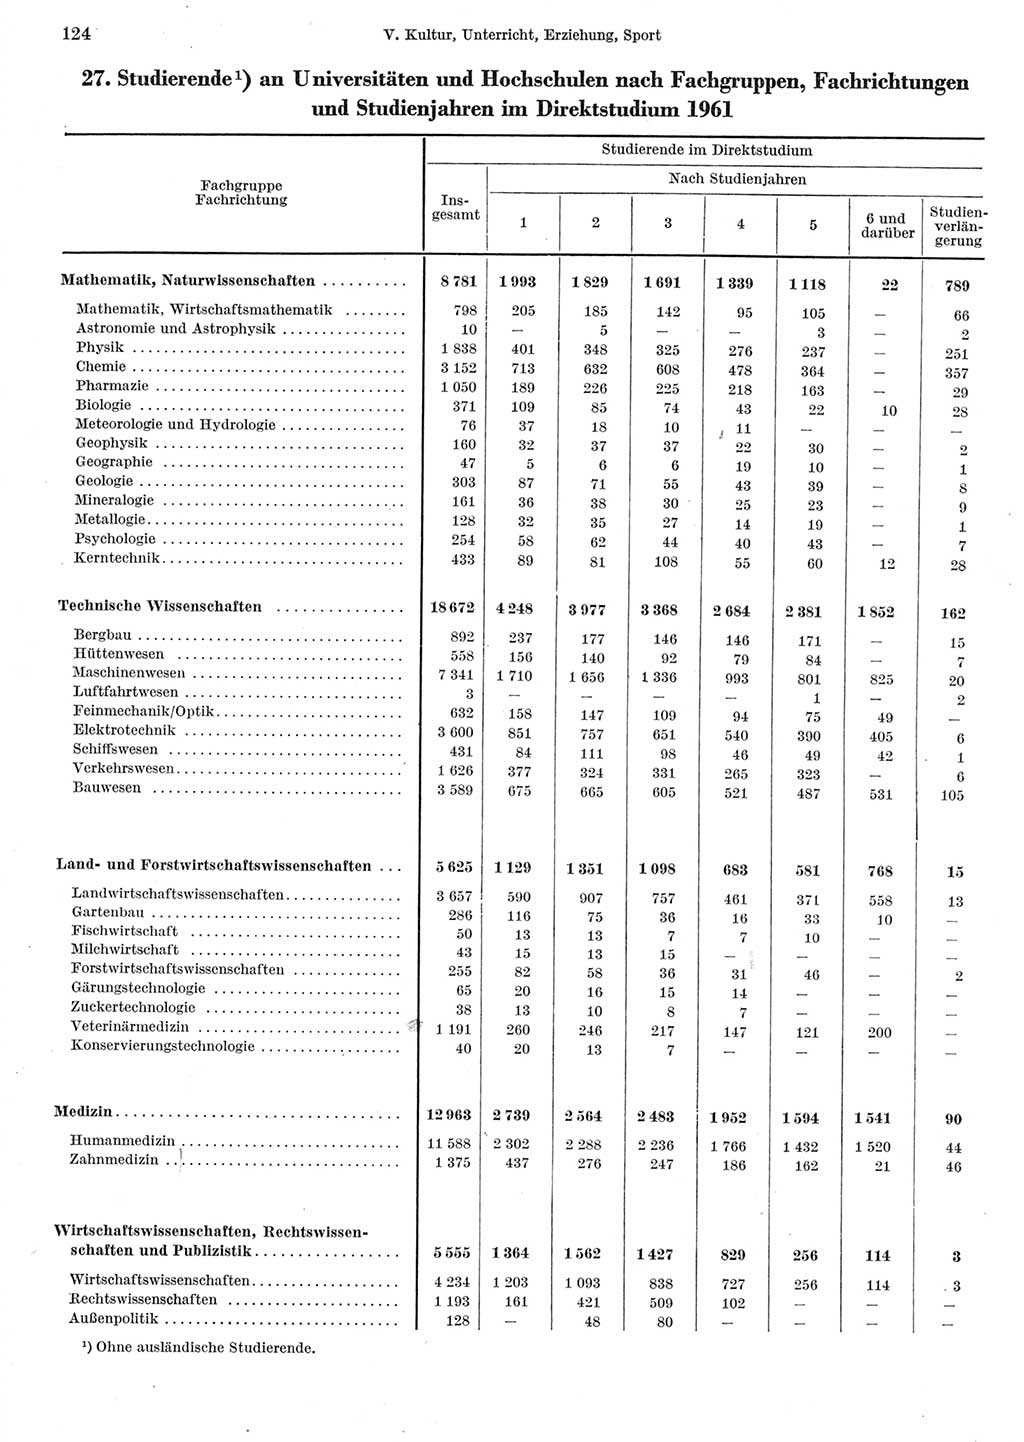 Statistisches Jahrbuch der Deutschen Demokratischen Republik (DDR) 1962, Seite 124 (Stat. Jb. DDR 1962, S. 124)